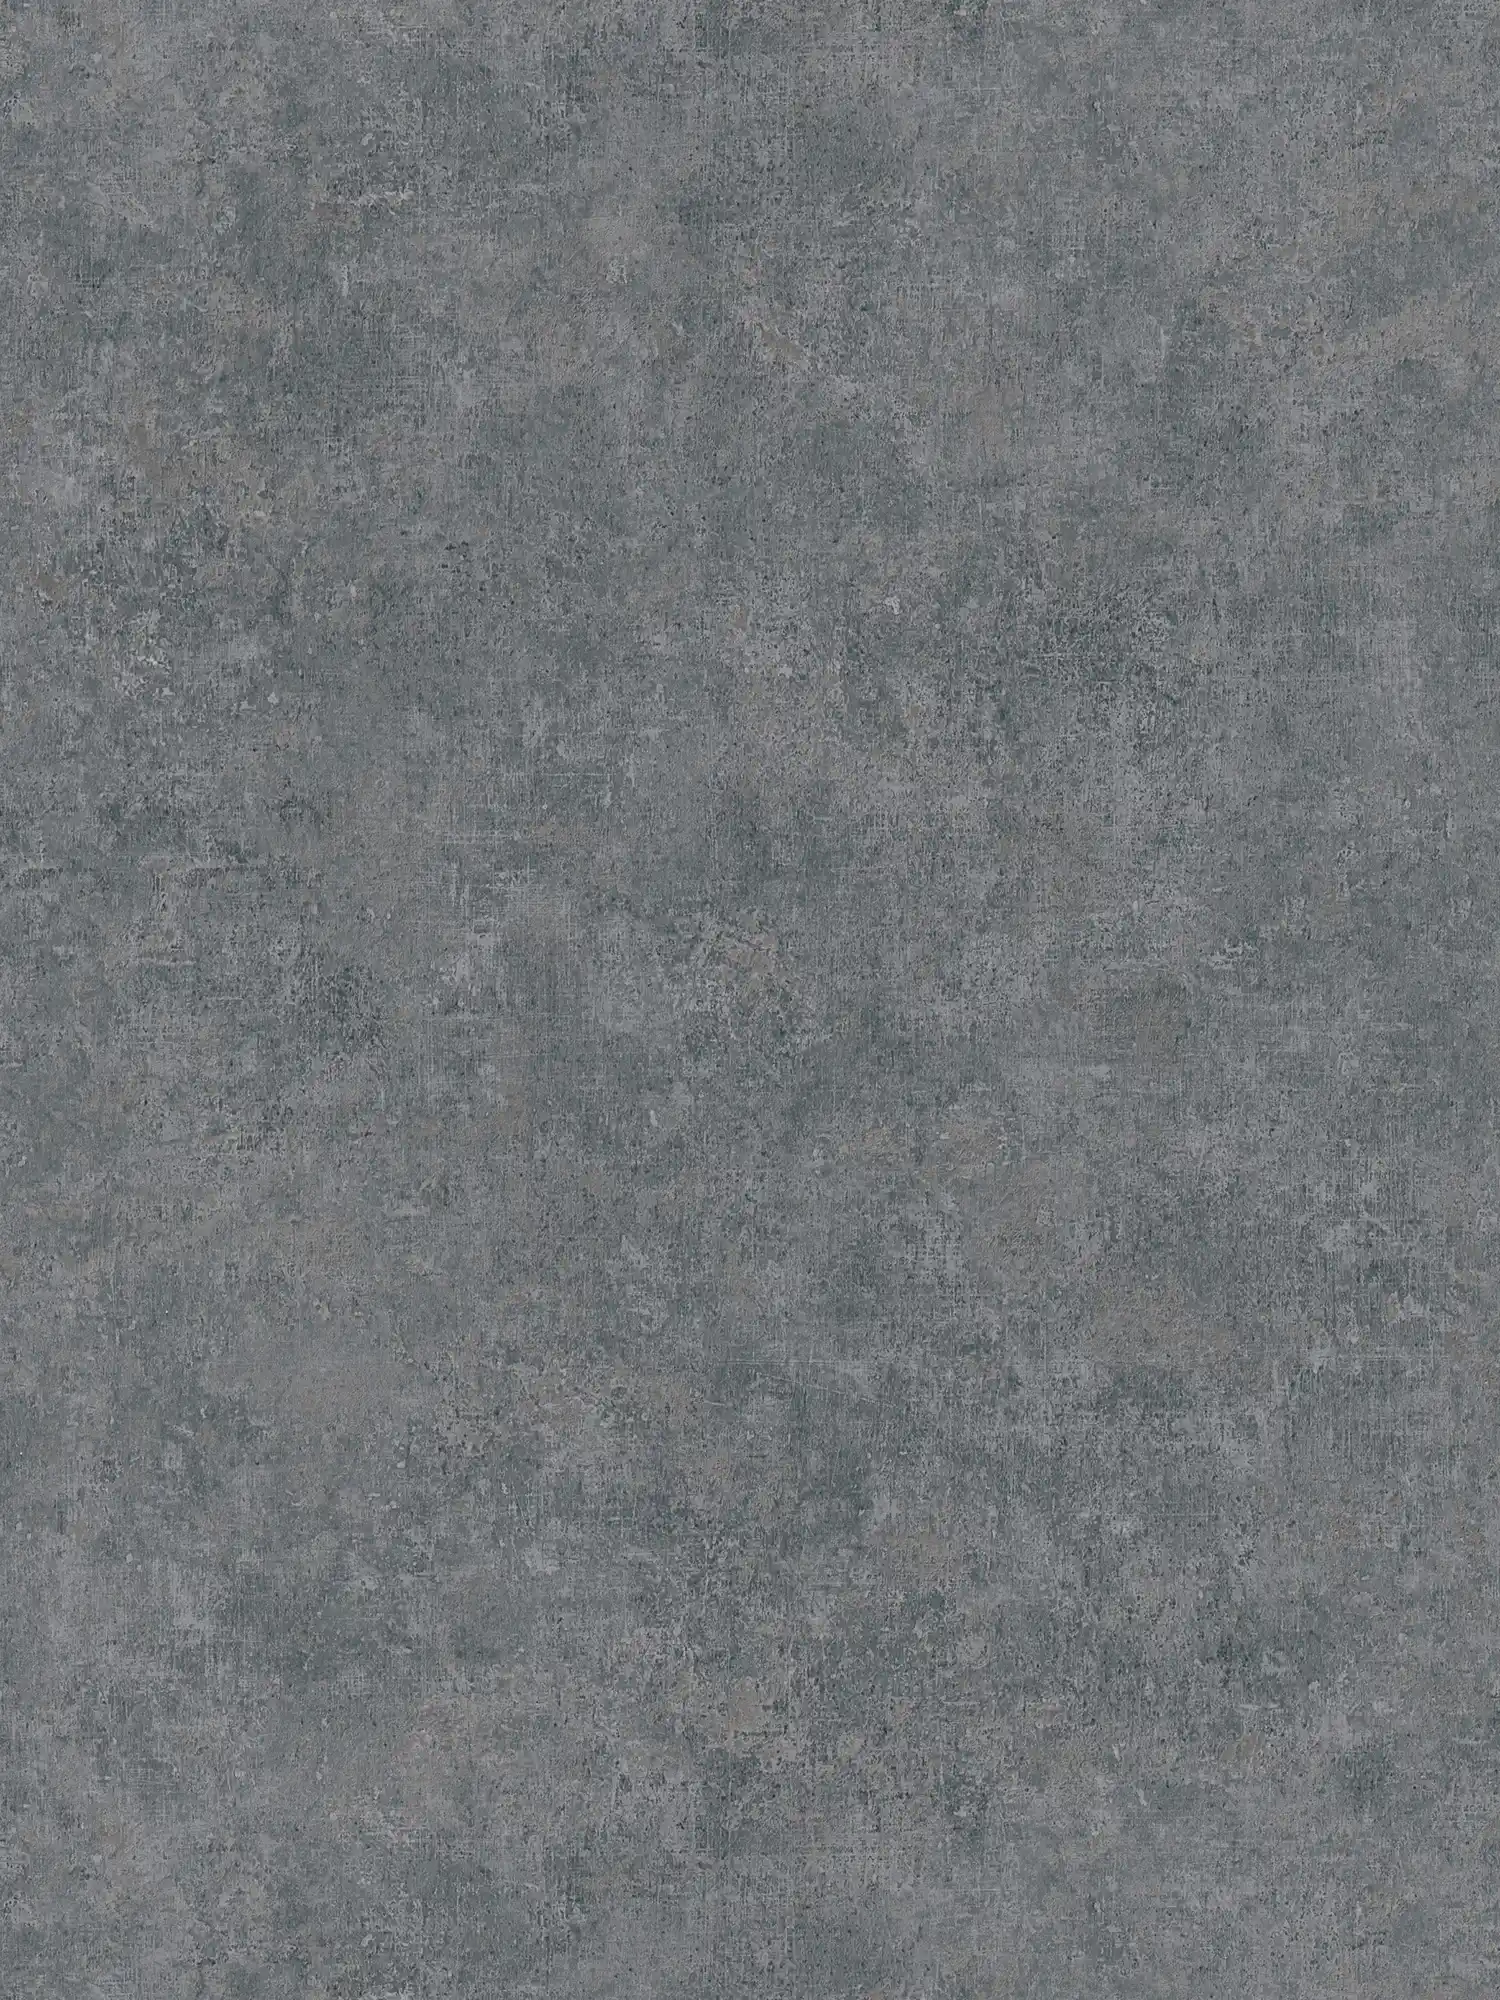 Vliesbehang met ton sur ton patroon, used look - grijs
